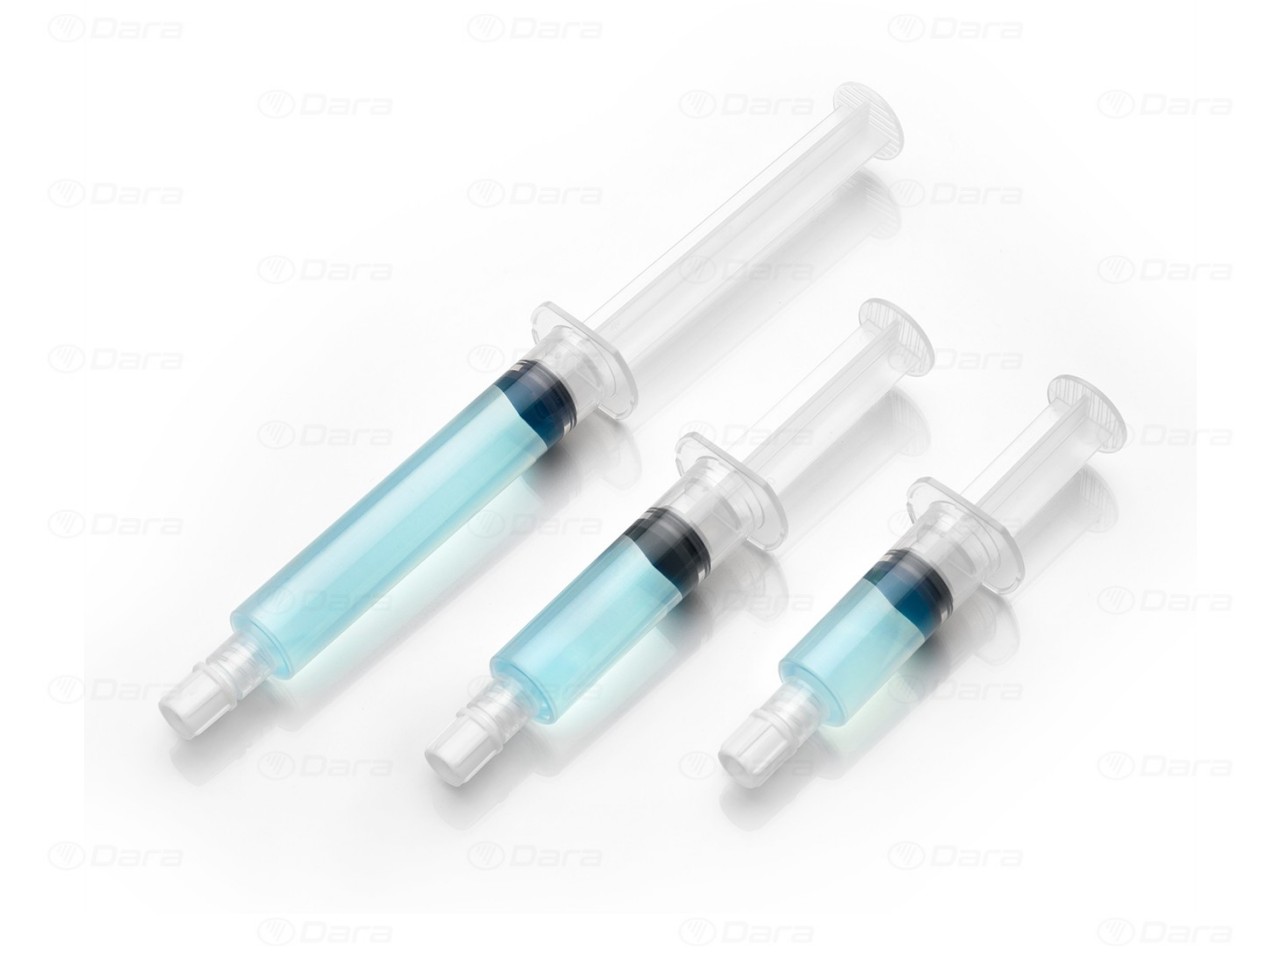 Syringe dosing